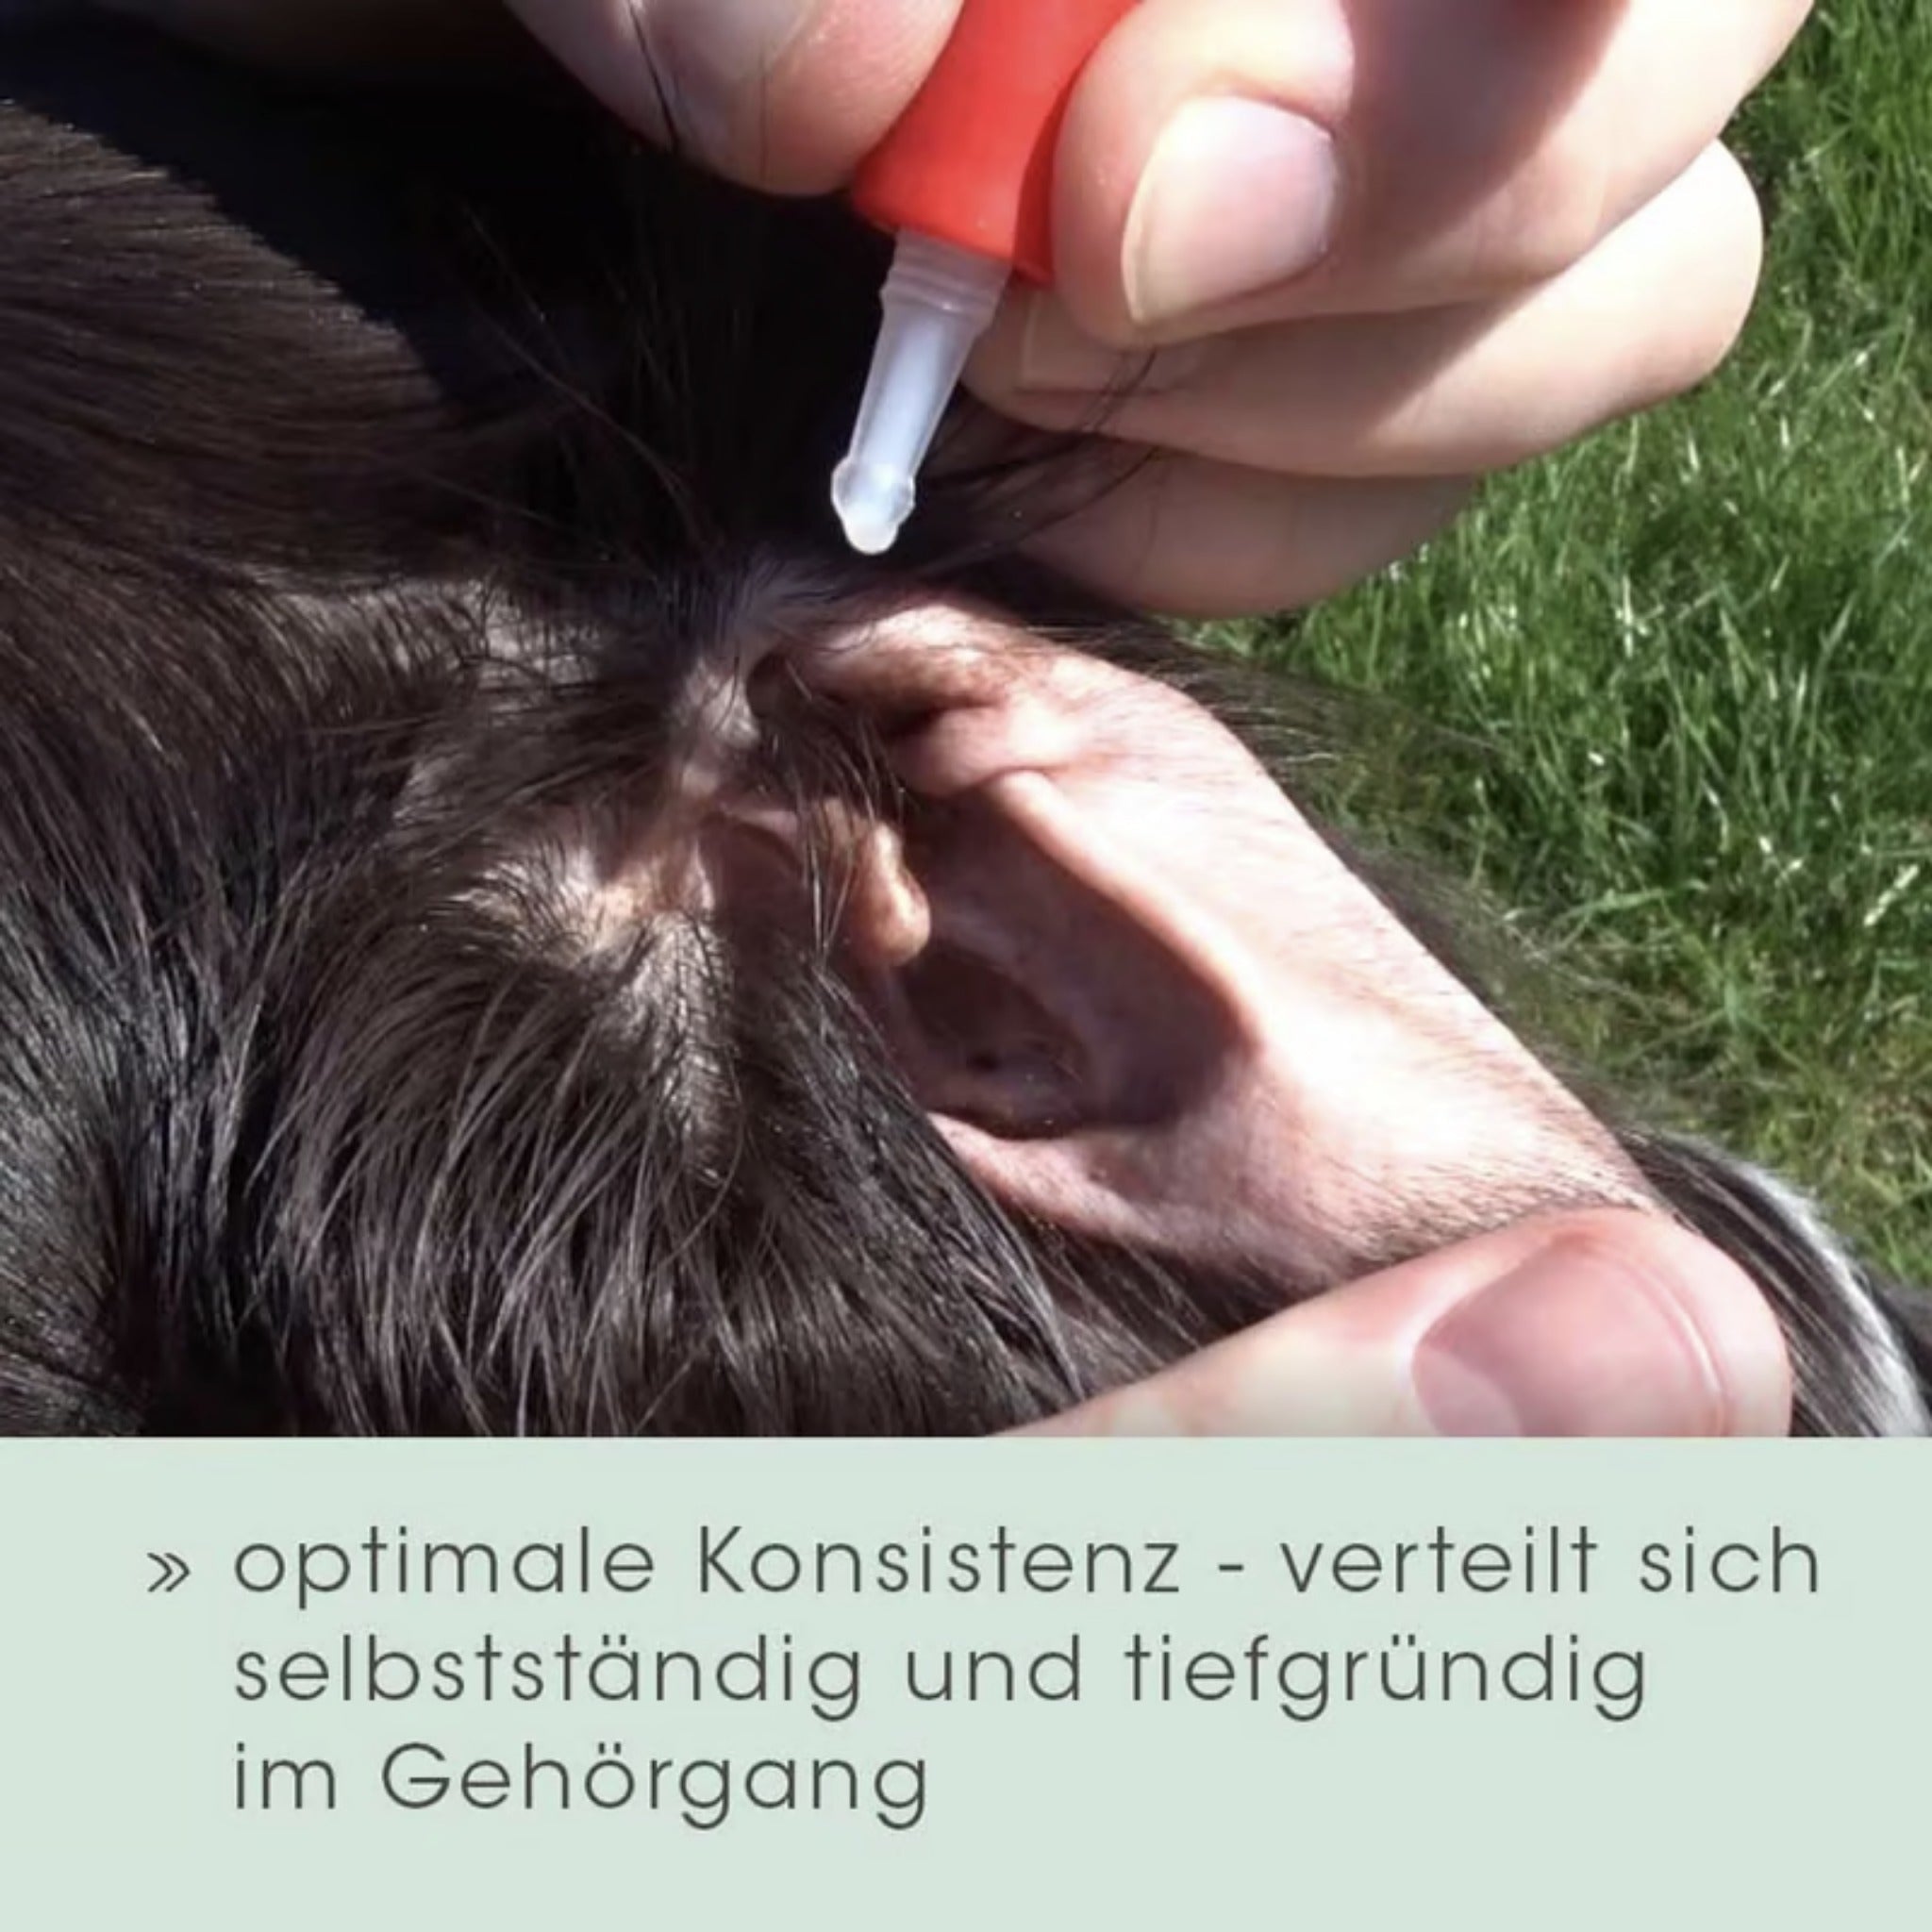 cdVet Ohrenpflege für Hunde - Woofshack